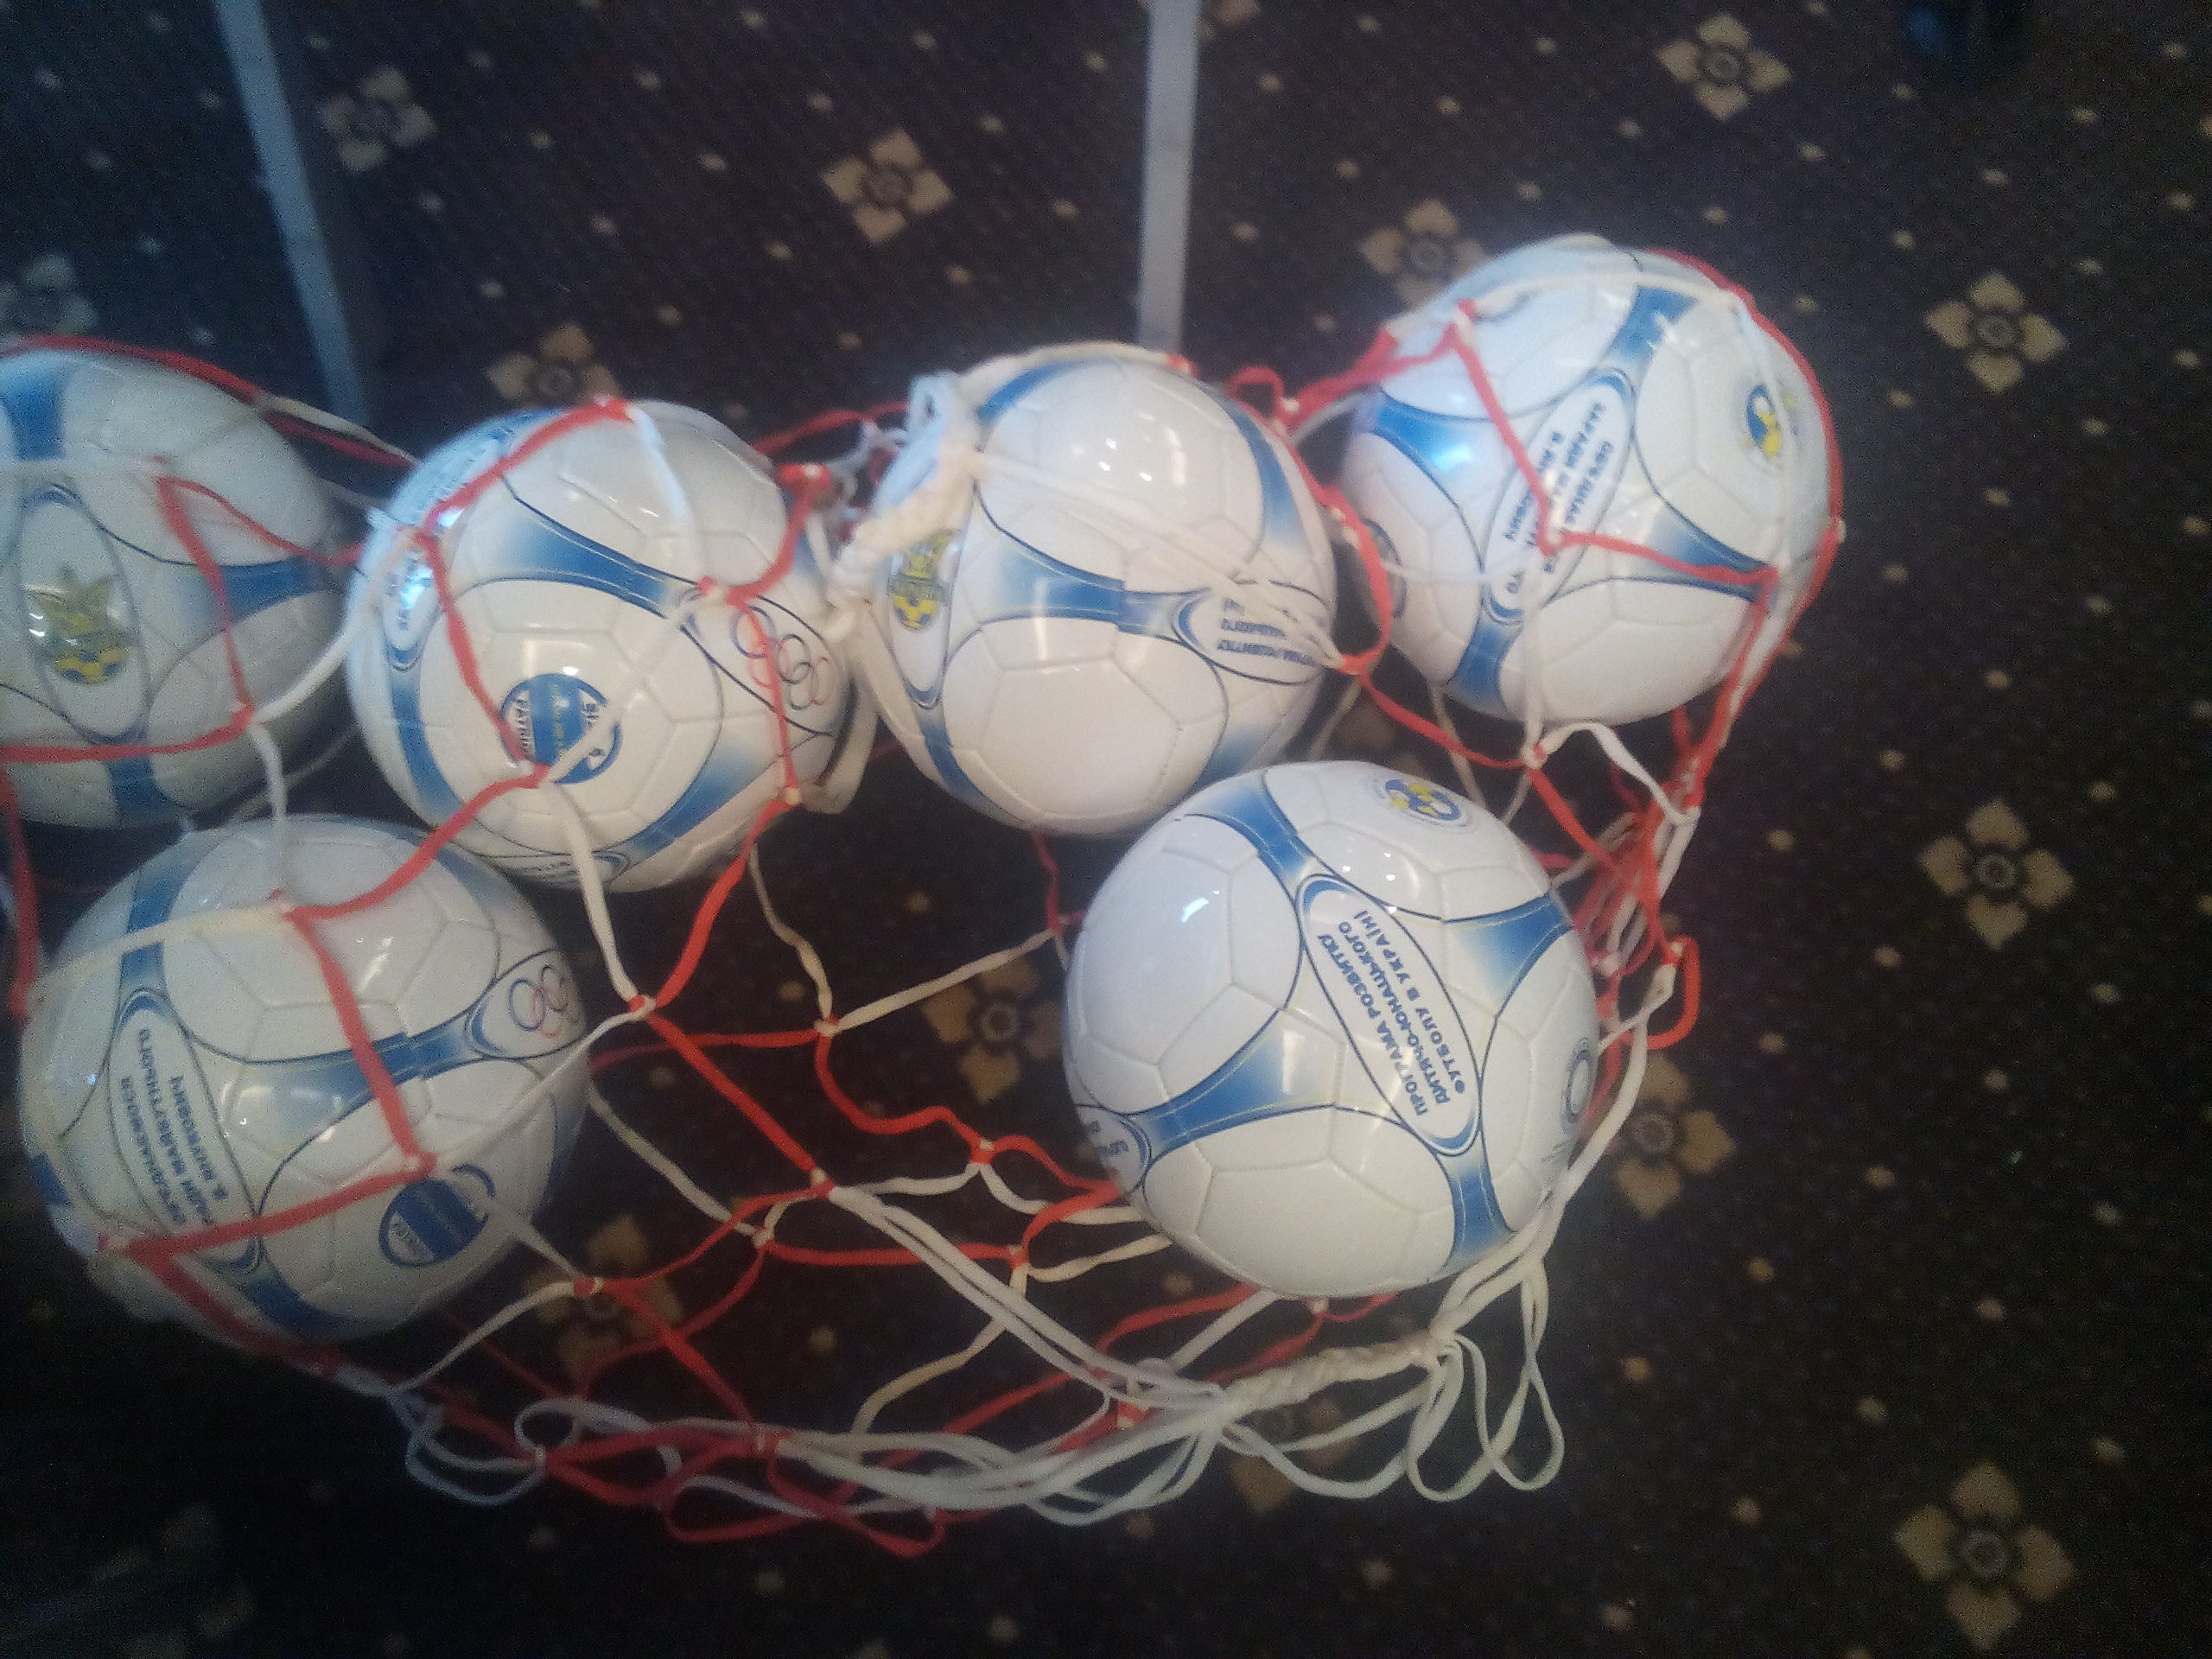 Павелко показал мячи, которыми Григорий Суркис агитировал за Виктора Януковича (Фото) - изображение 5